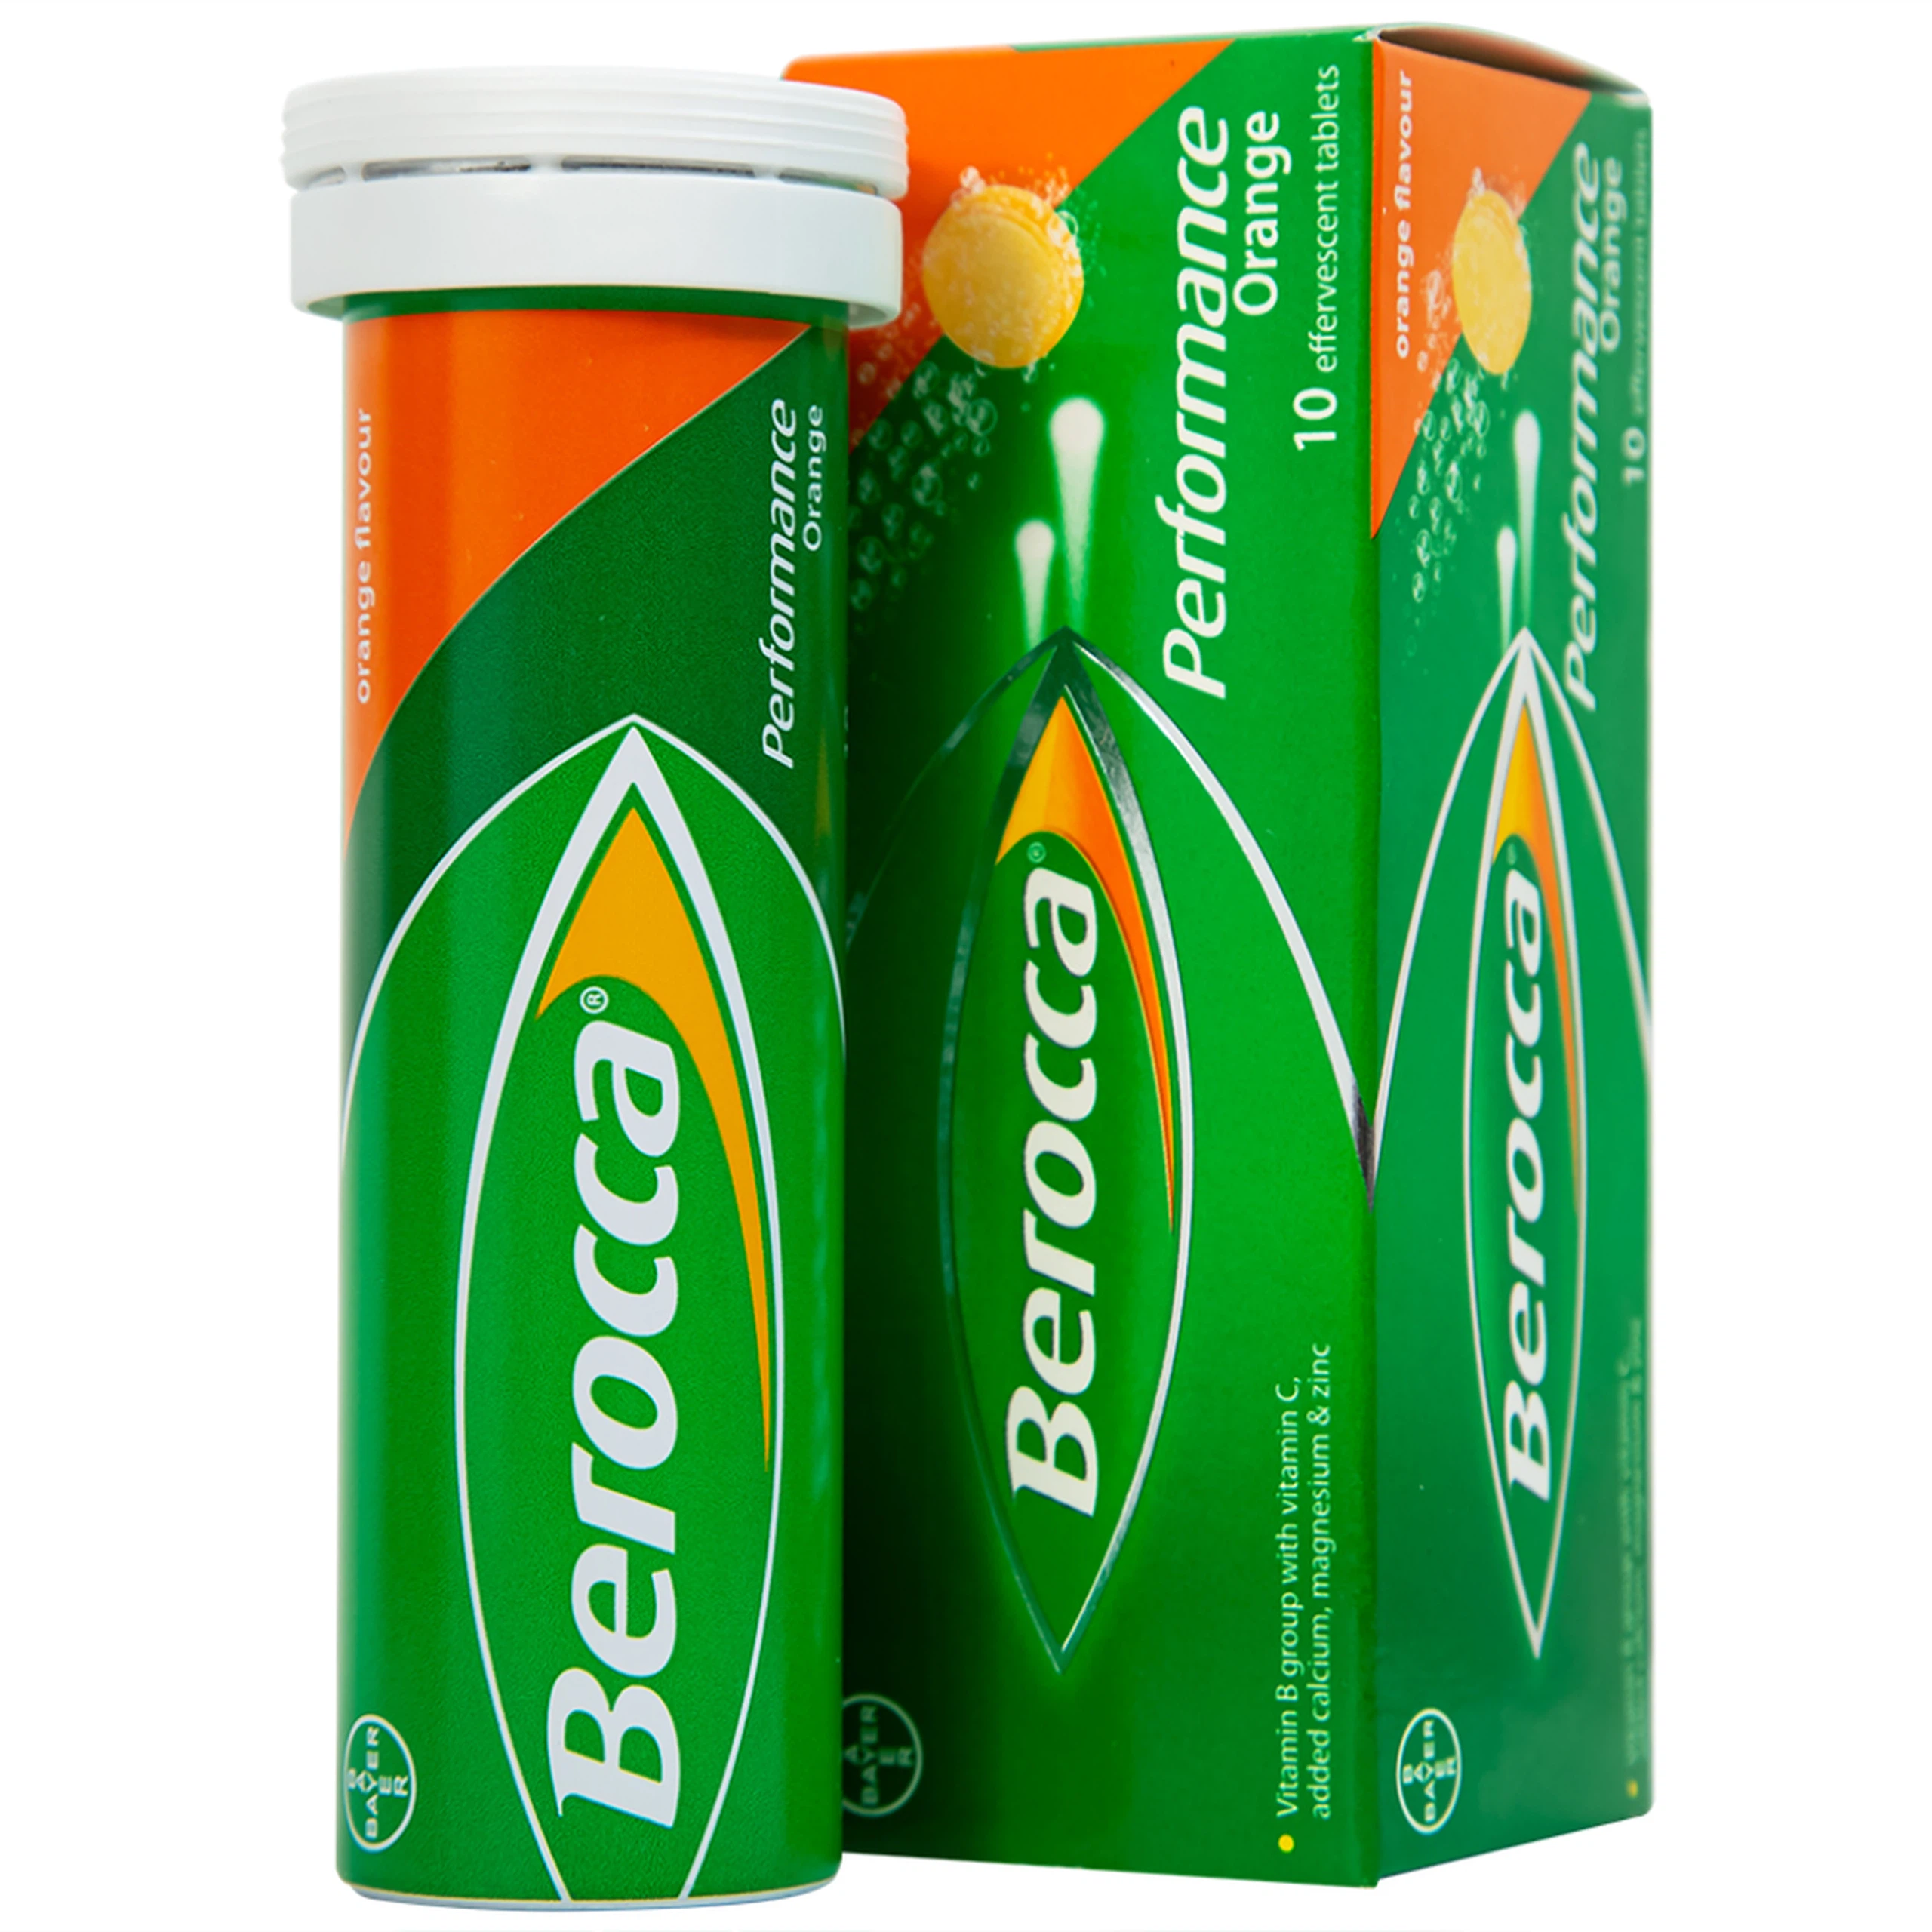 Viên sủi Berocca Bayer bổ sung vitamin và khoáng chất (10 viên)